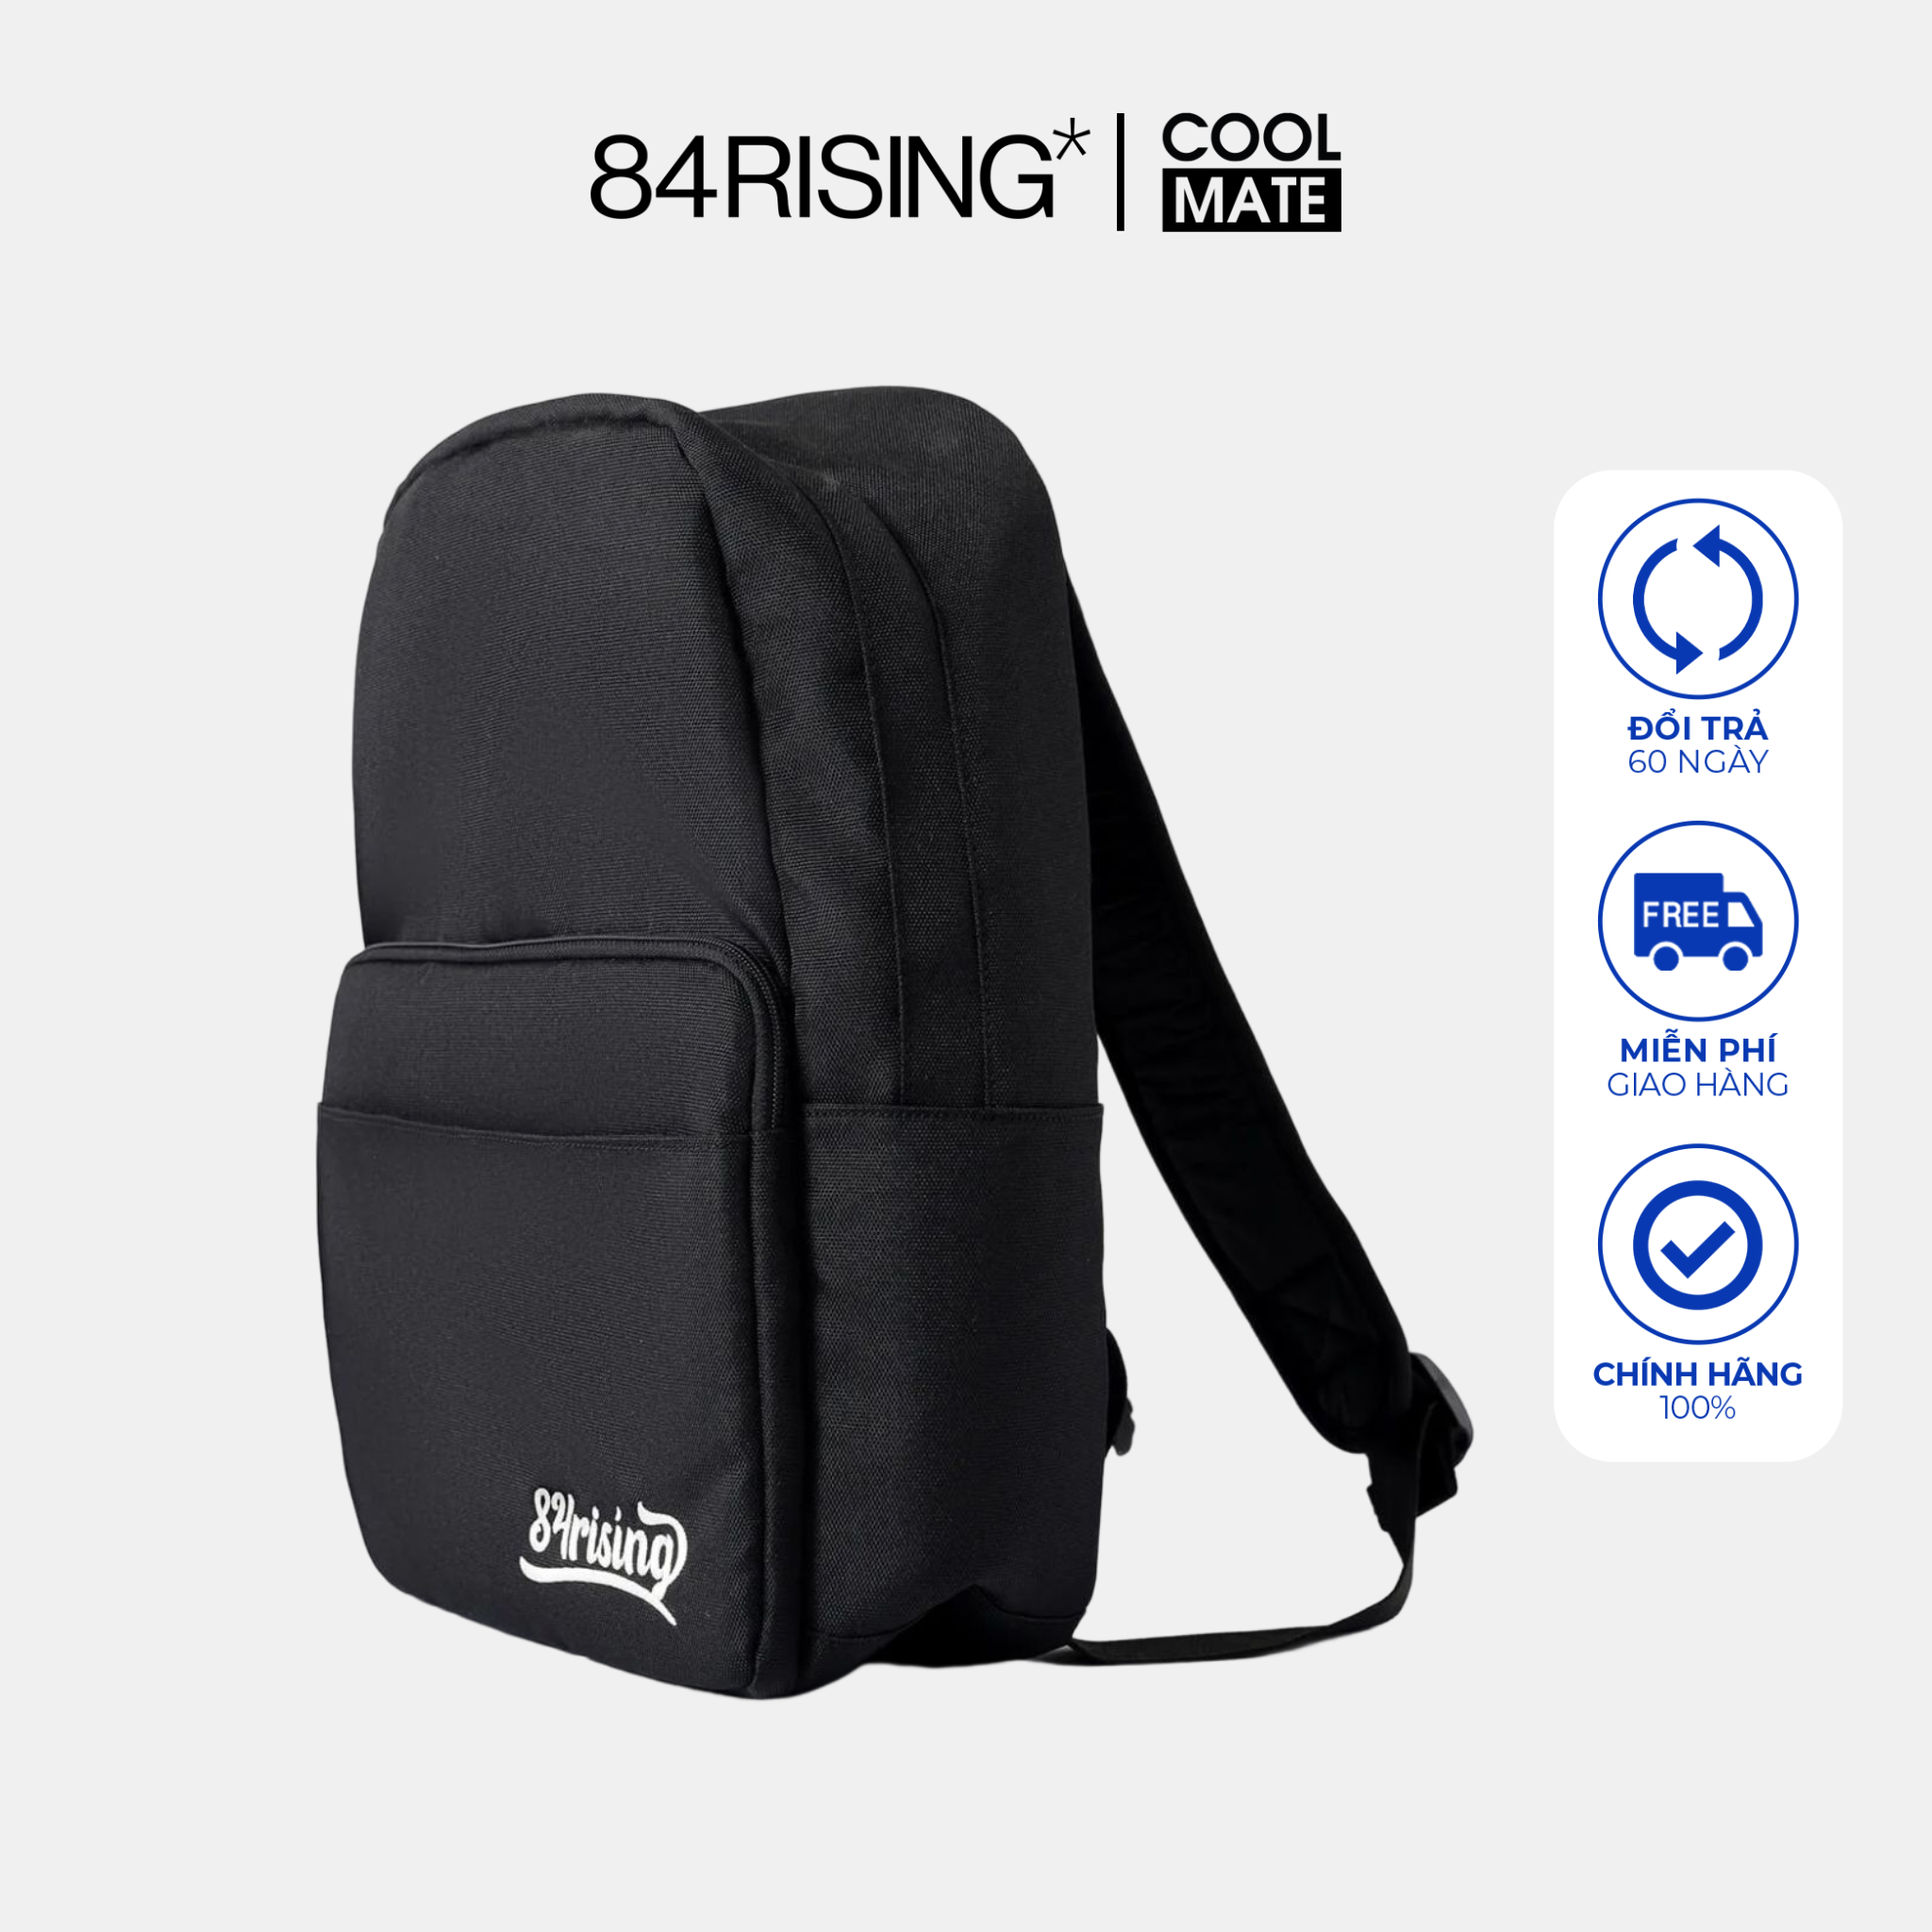 Mua 2 giảm 20%Balo Backpack Logo 84RISING chống thấm nước - 84RISING